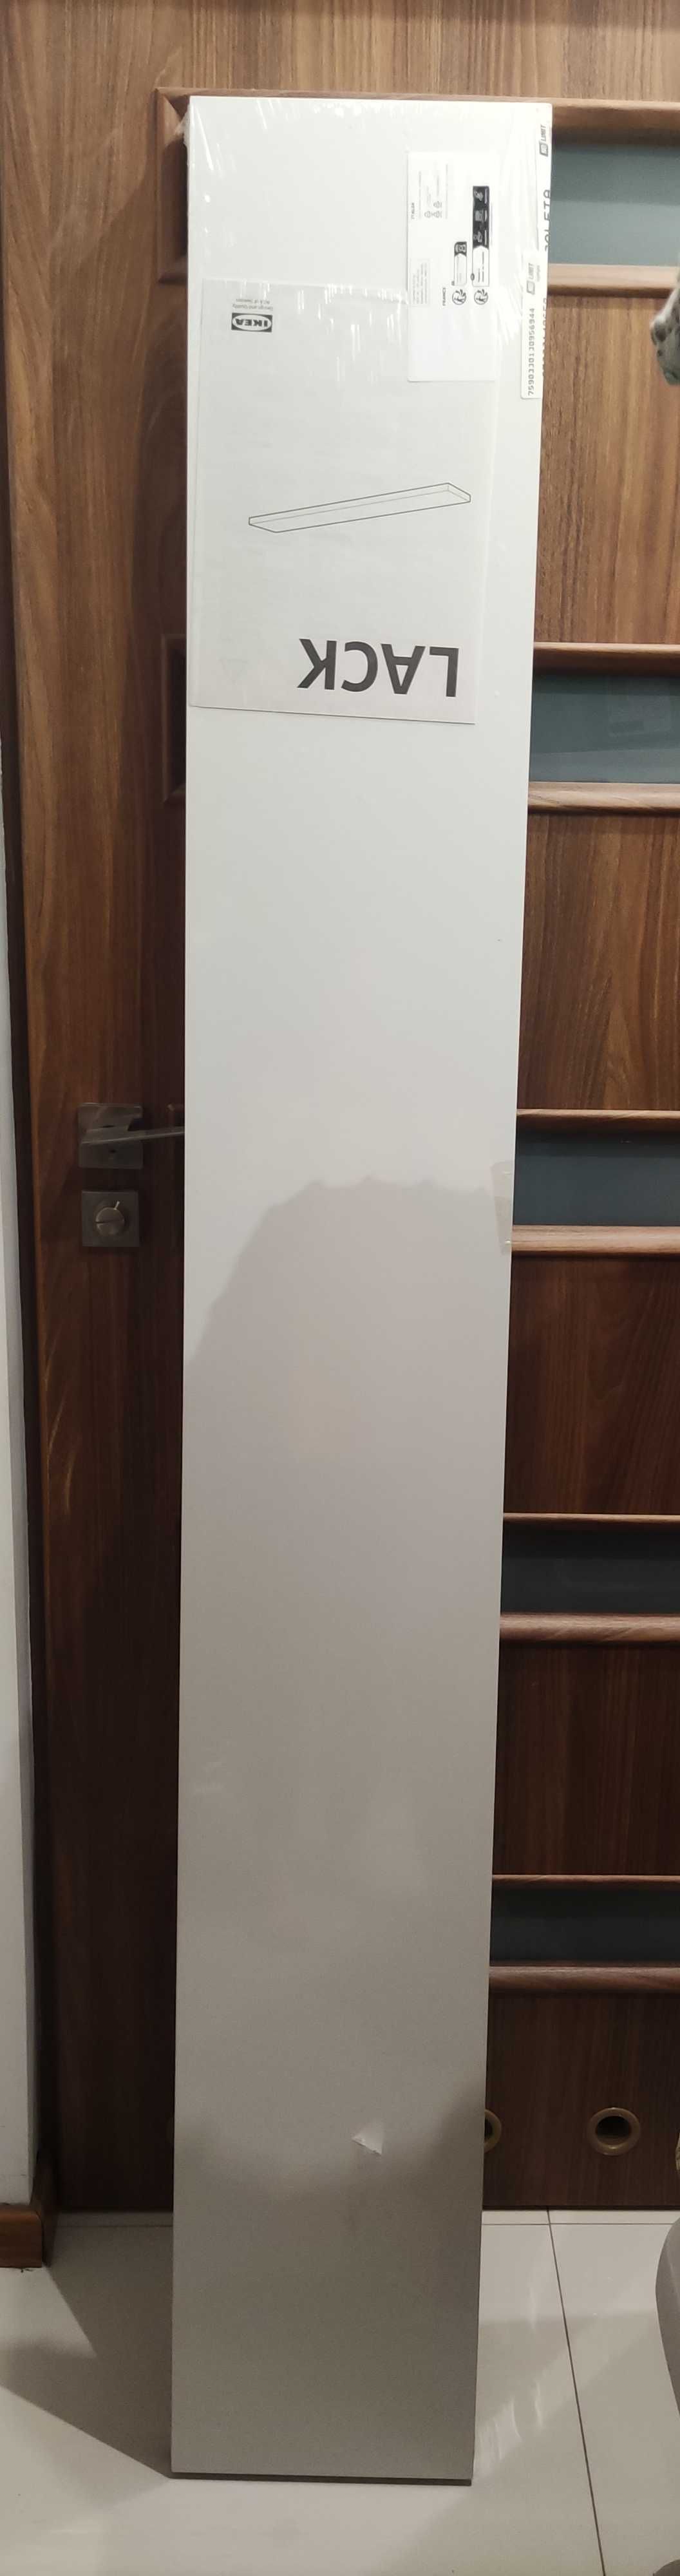 Półka Lack Ikea 190 cm